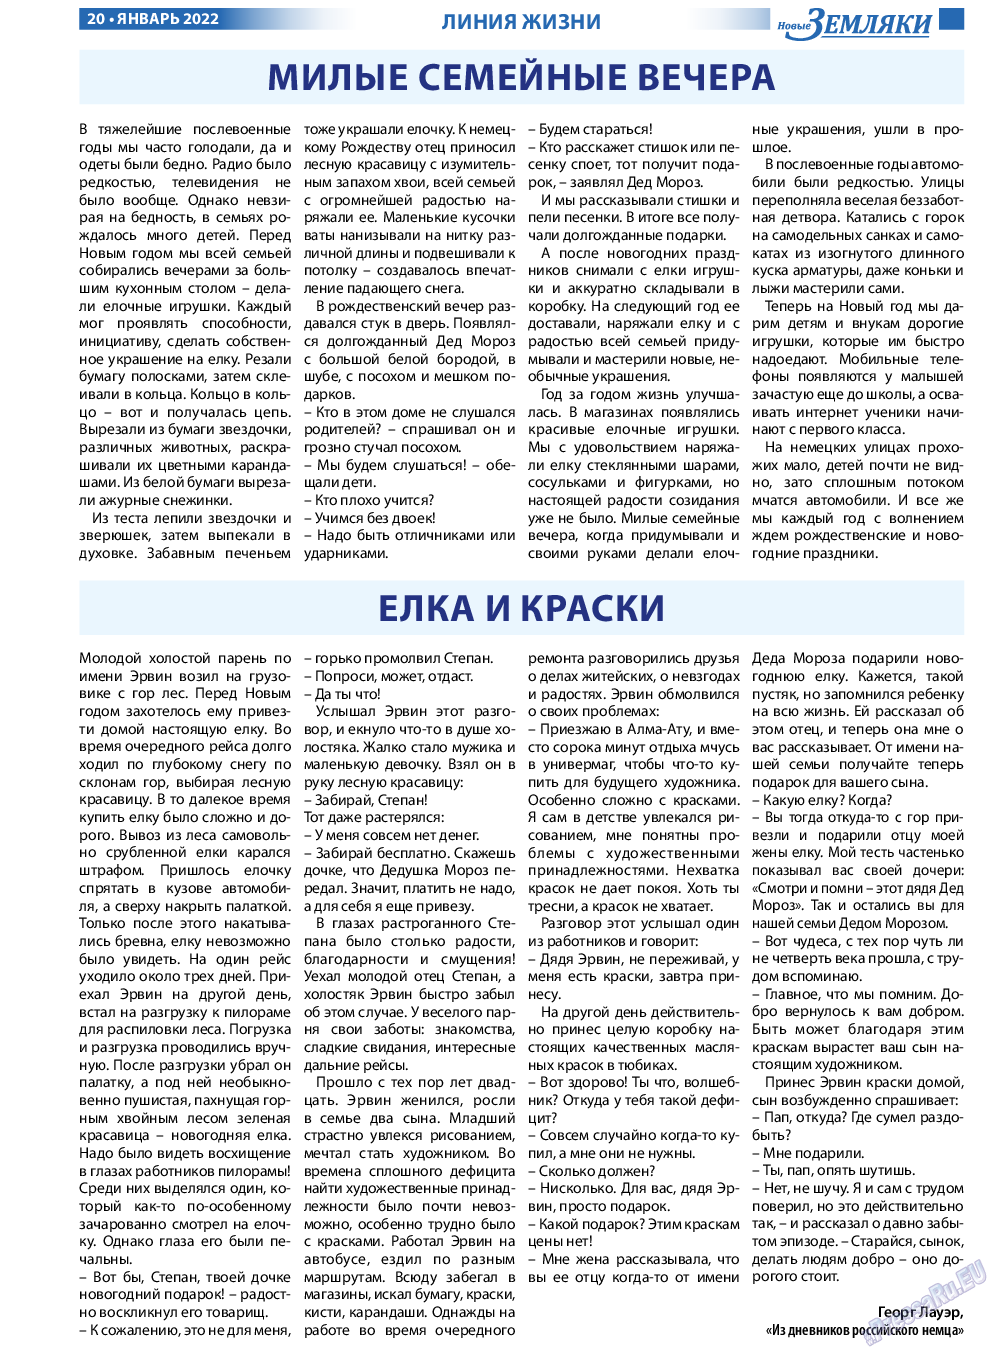 Новые Земляки, газета. 2022 №1 стр.20